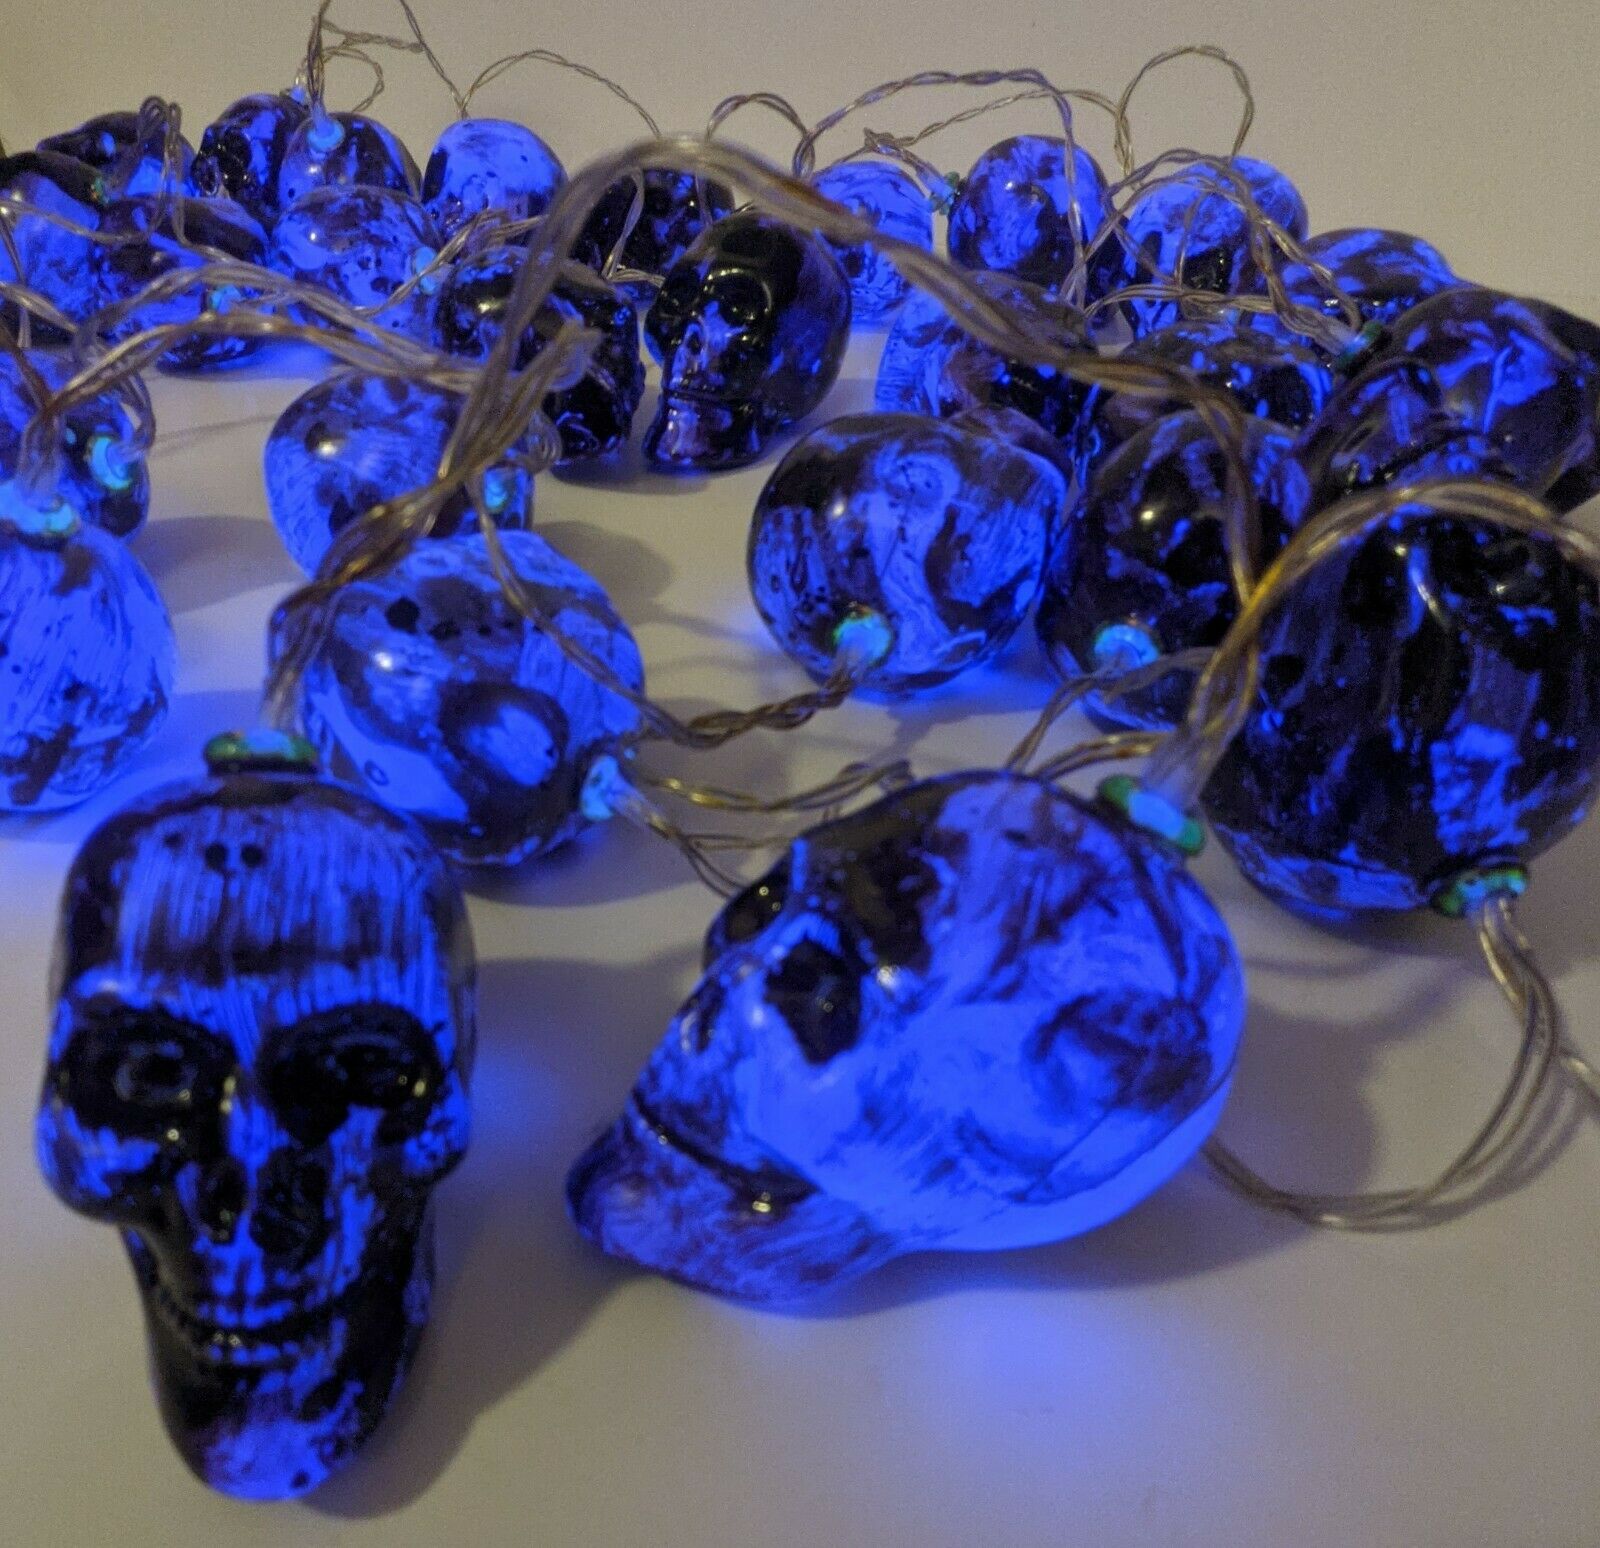 Halloween Skull Head String Lights 16.4' Length 30 Blue Led's 8 Light Settings